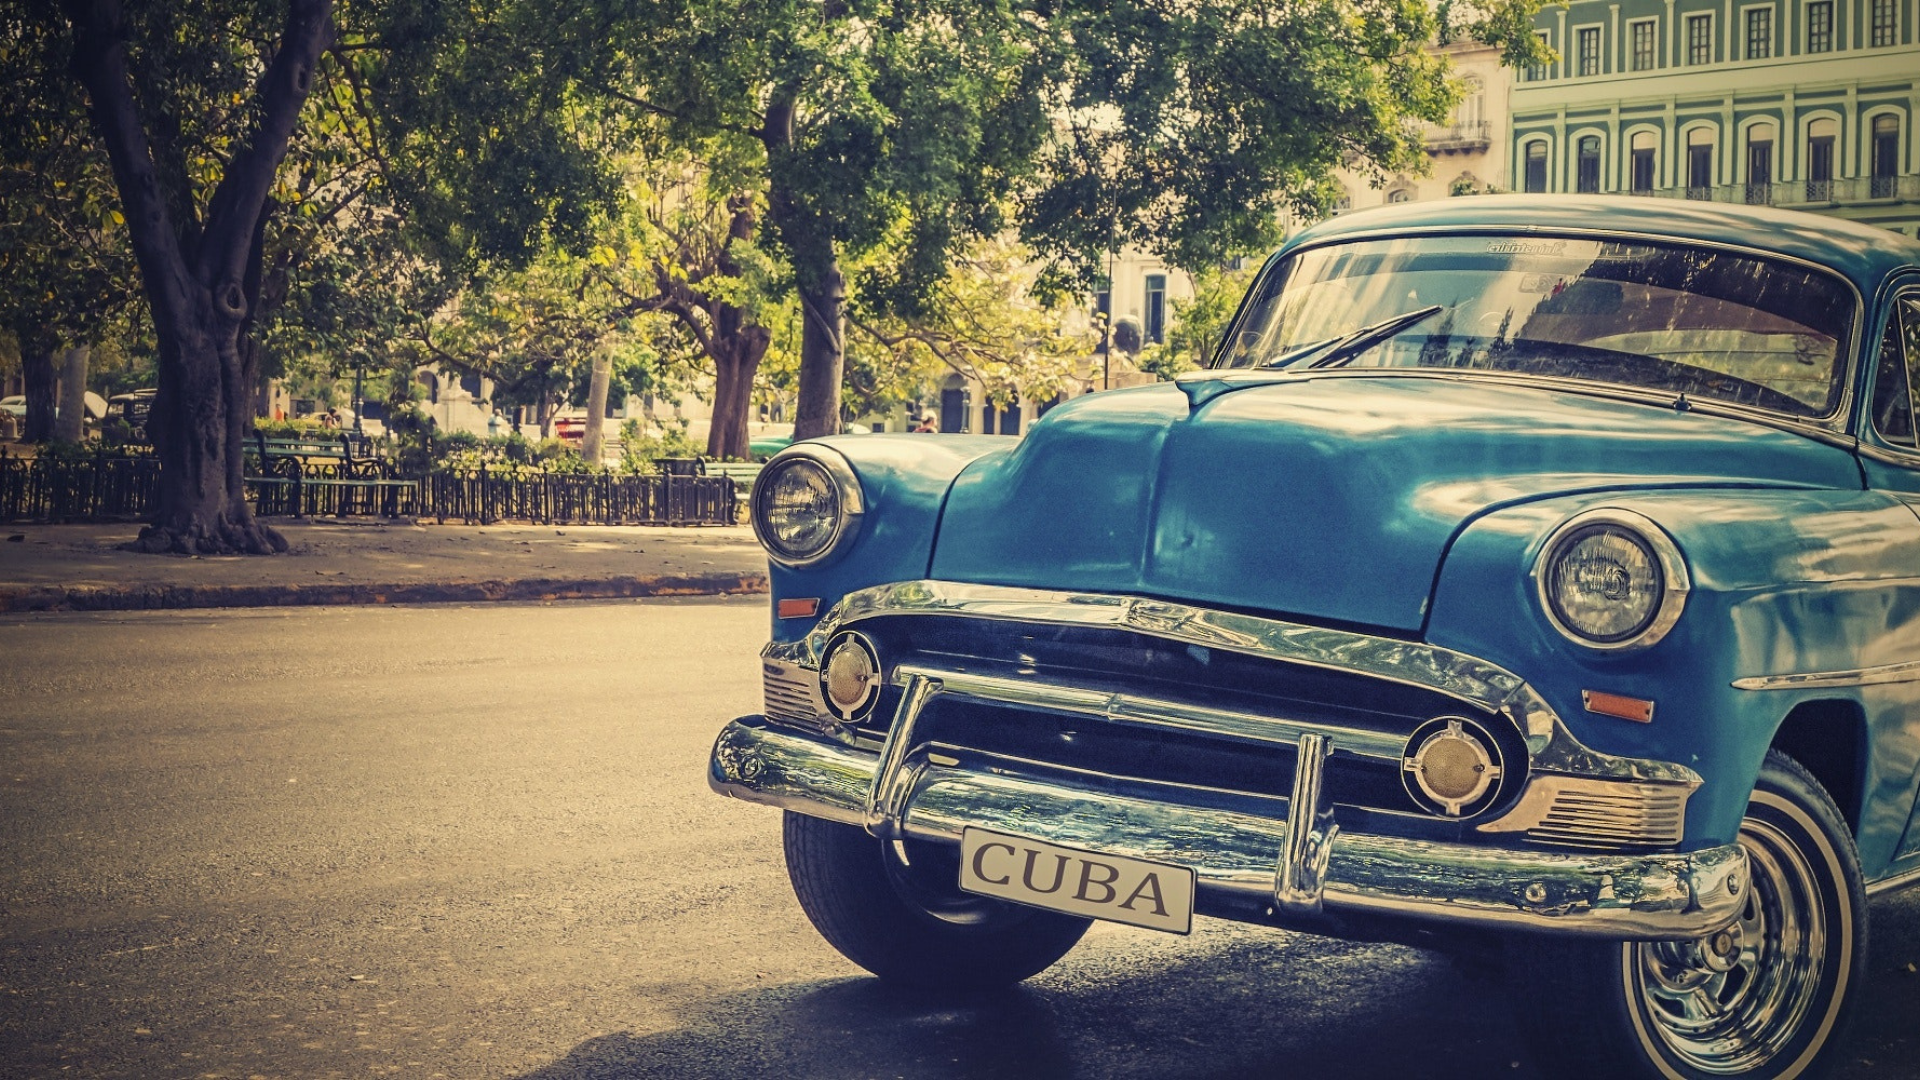 Does a classic car ride in Cuba sound fun?